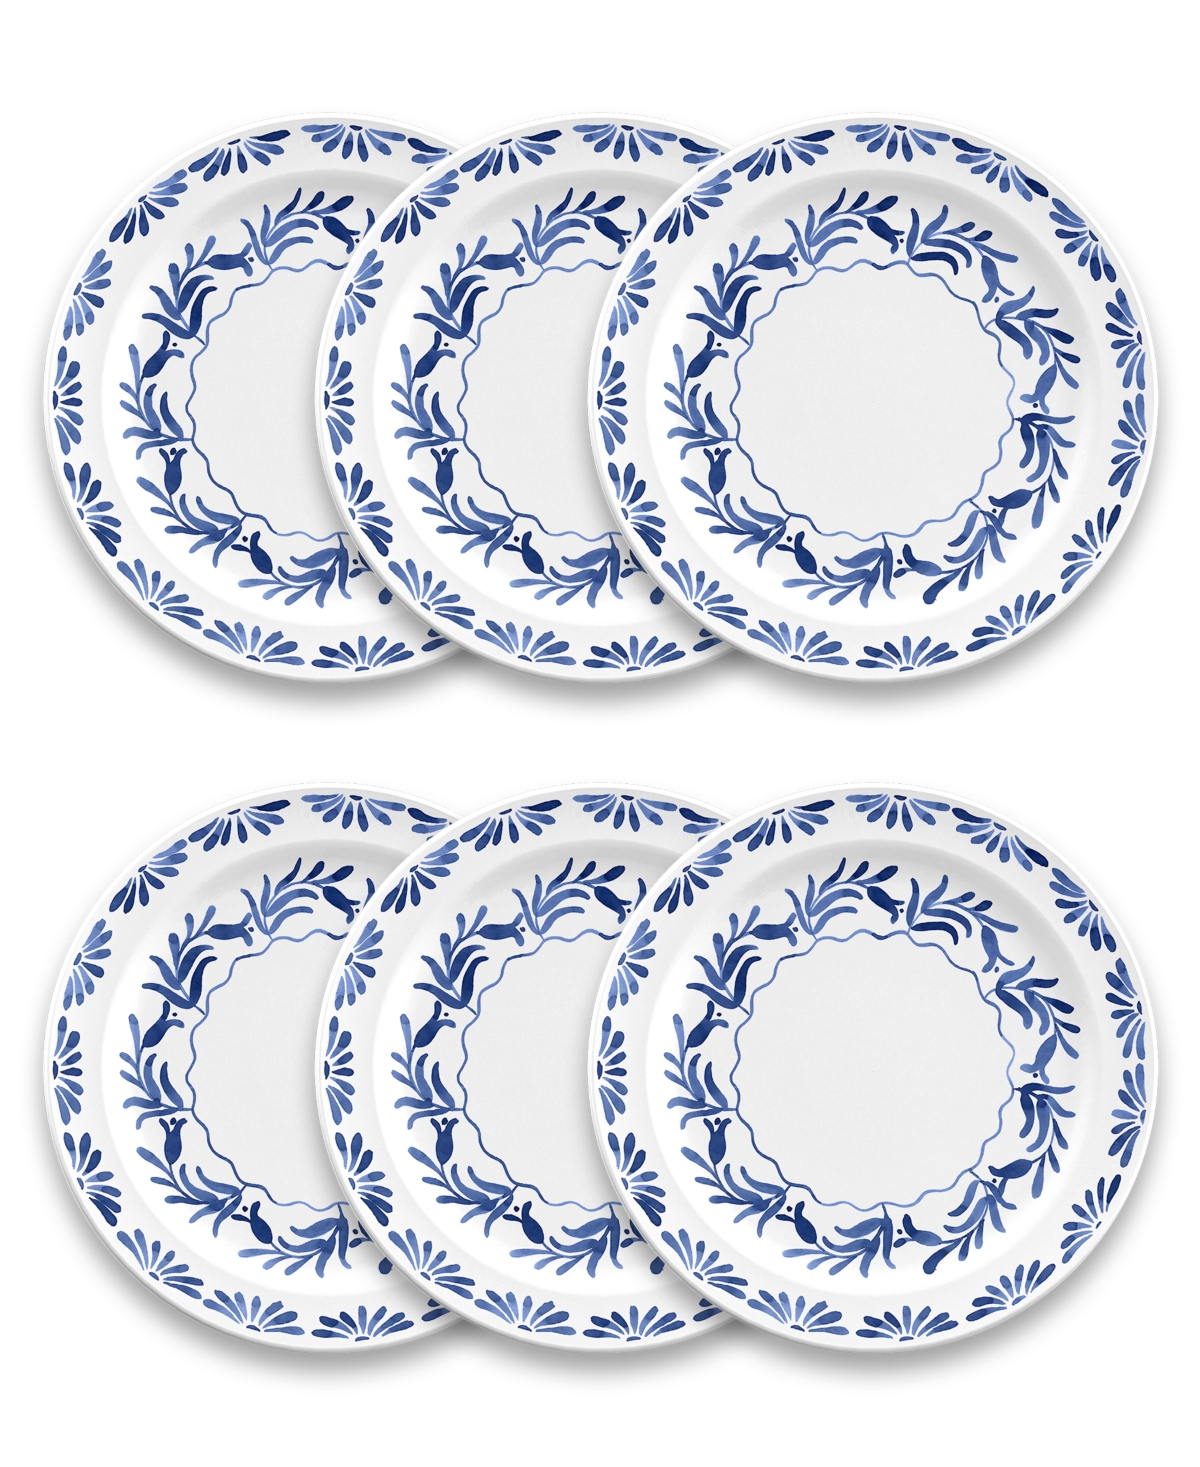 Azul Dinner Plate Set of 6 - Blue